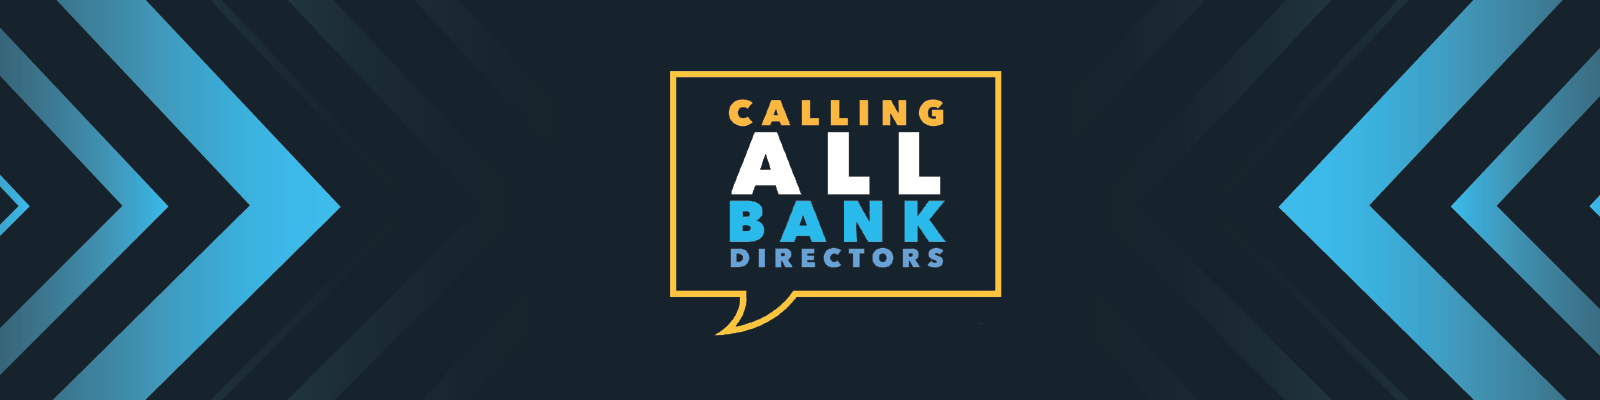 Calling All Bank Directors